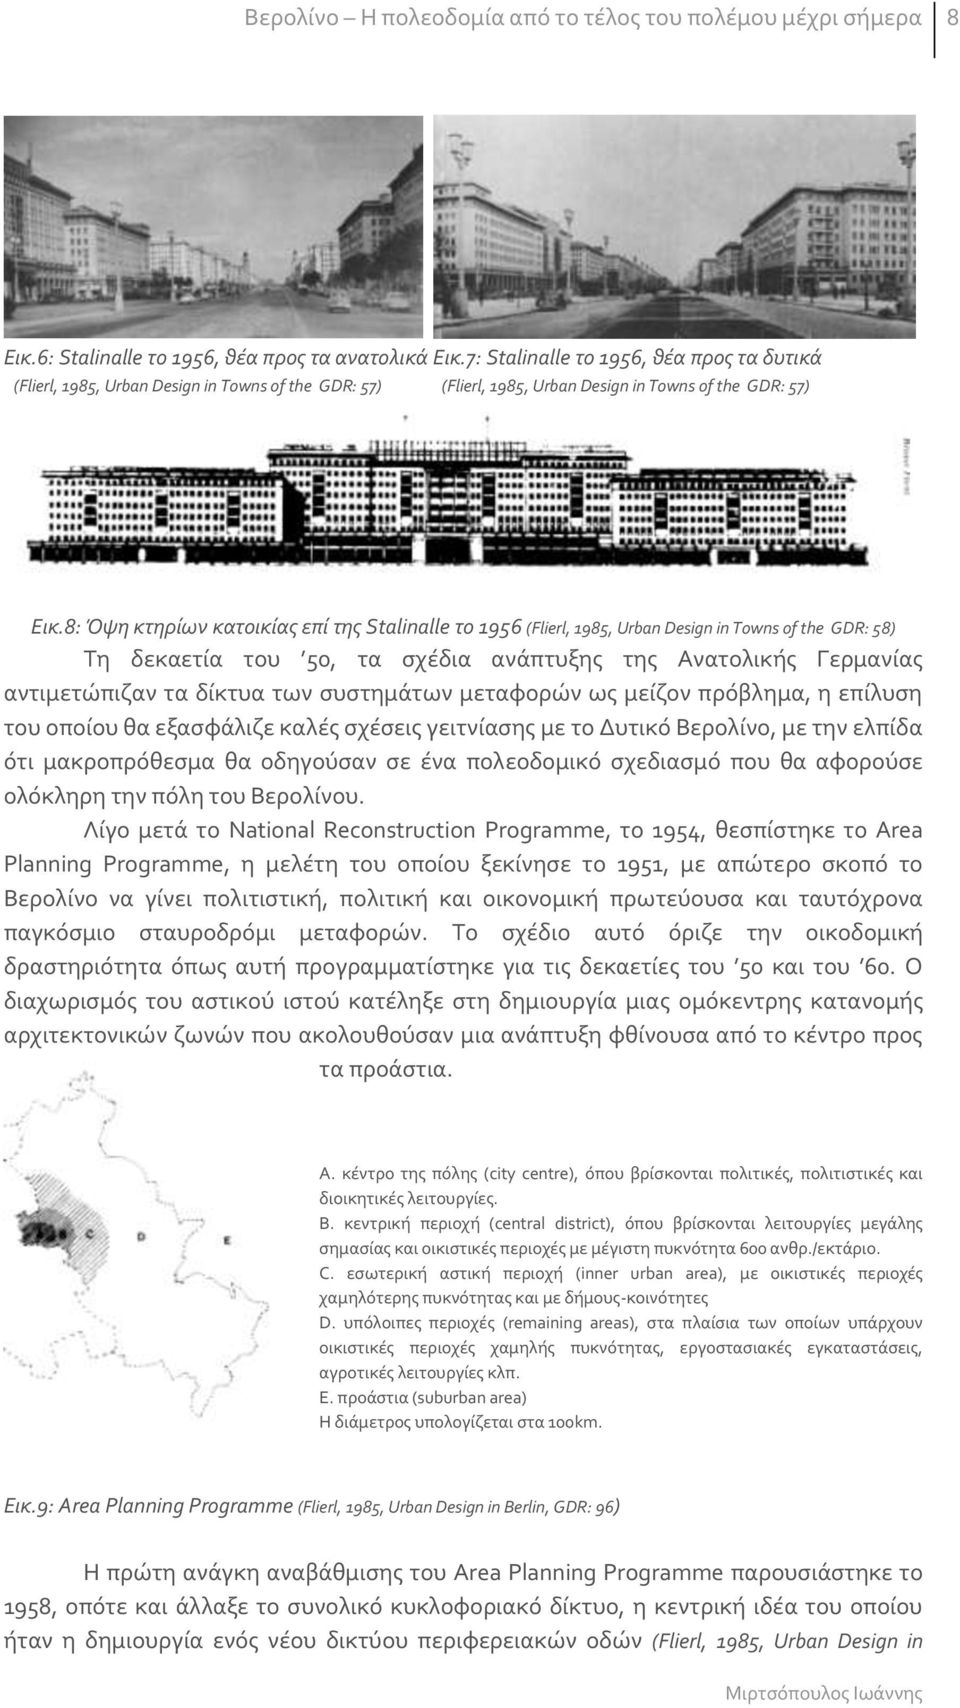 8: Όψη κτηρίων κατοικίας επί της Stalinalle το 1956 (Flierl, 1985, Urban Design in Towns of the GDR: 58) Τη δεκαετία του 50, τα σχέδια ανάπτυξης της Ανατολικής Γερμανίας αντιμετώπιζαν τα δίκτυα των